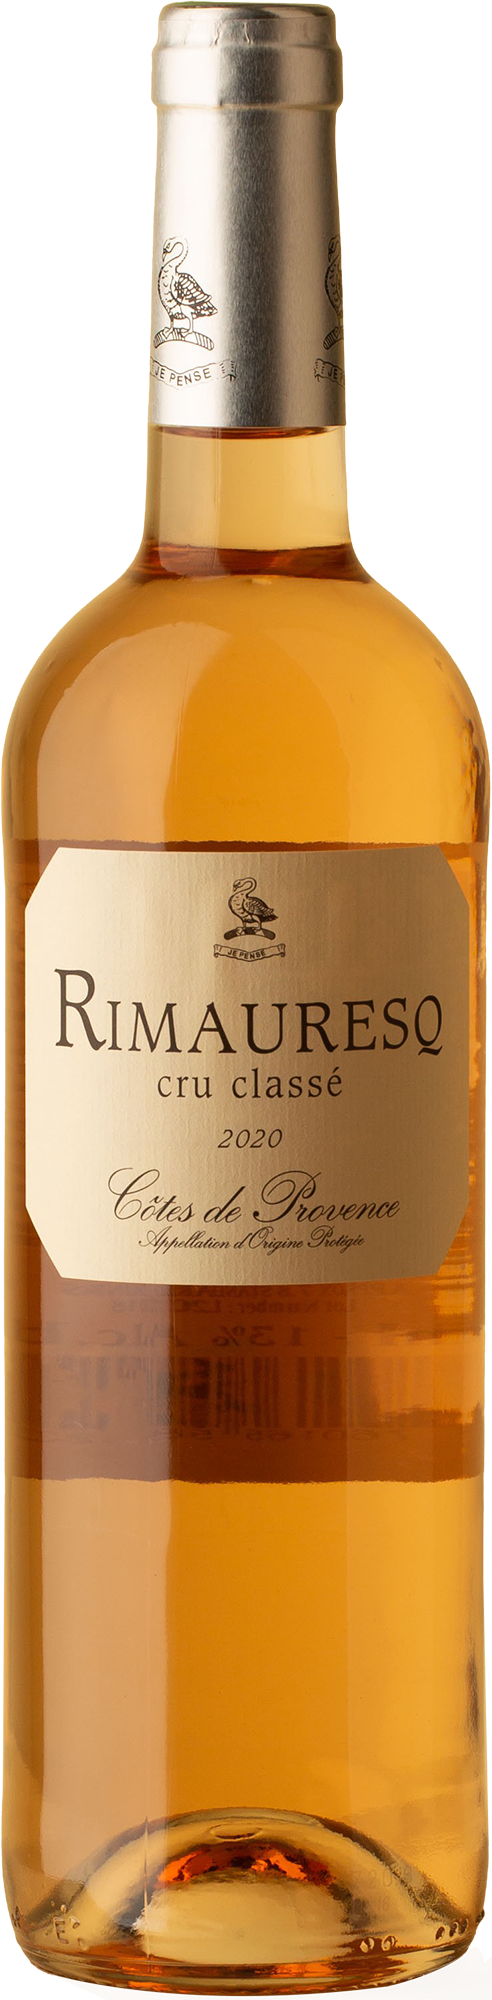 Rimauresq - Côtes de Provence Cru Classé Rosé 2020 Rosé